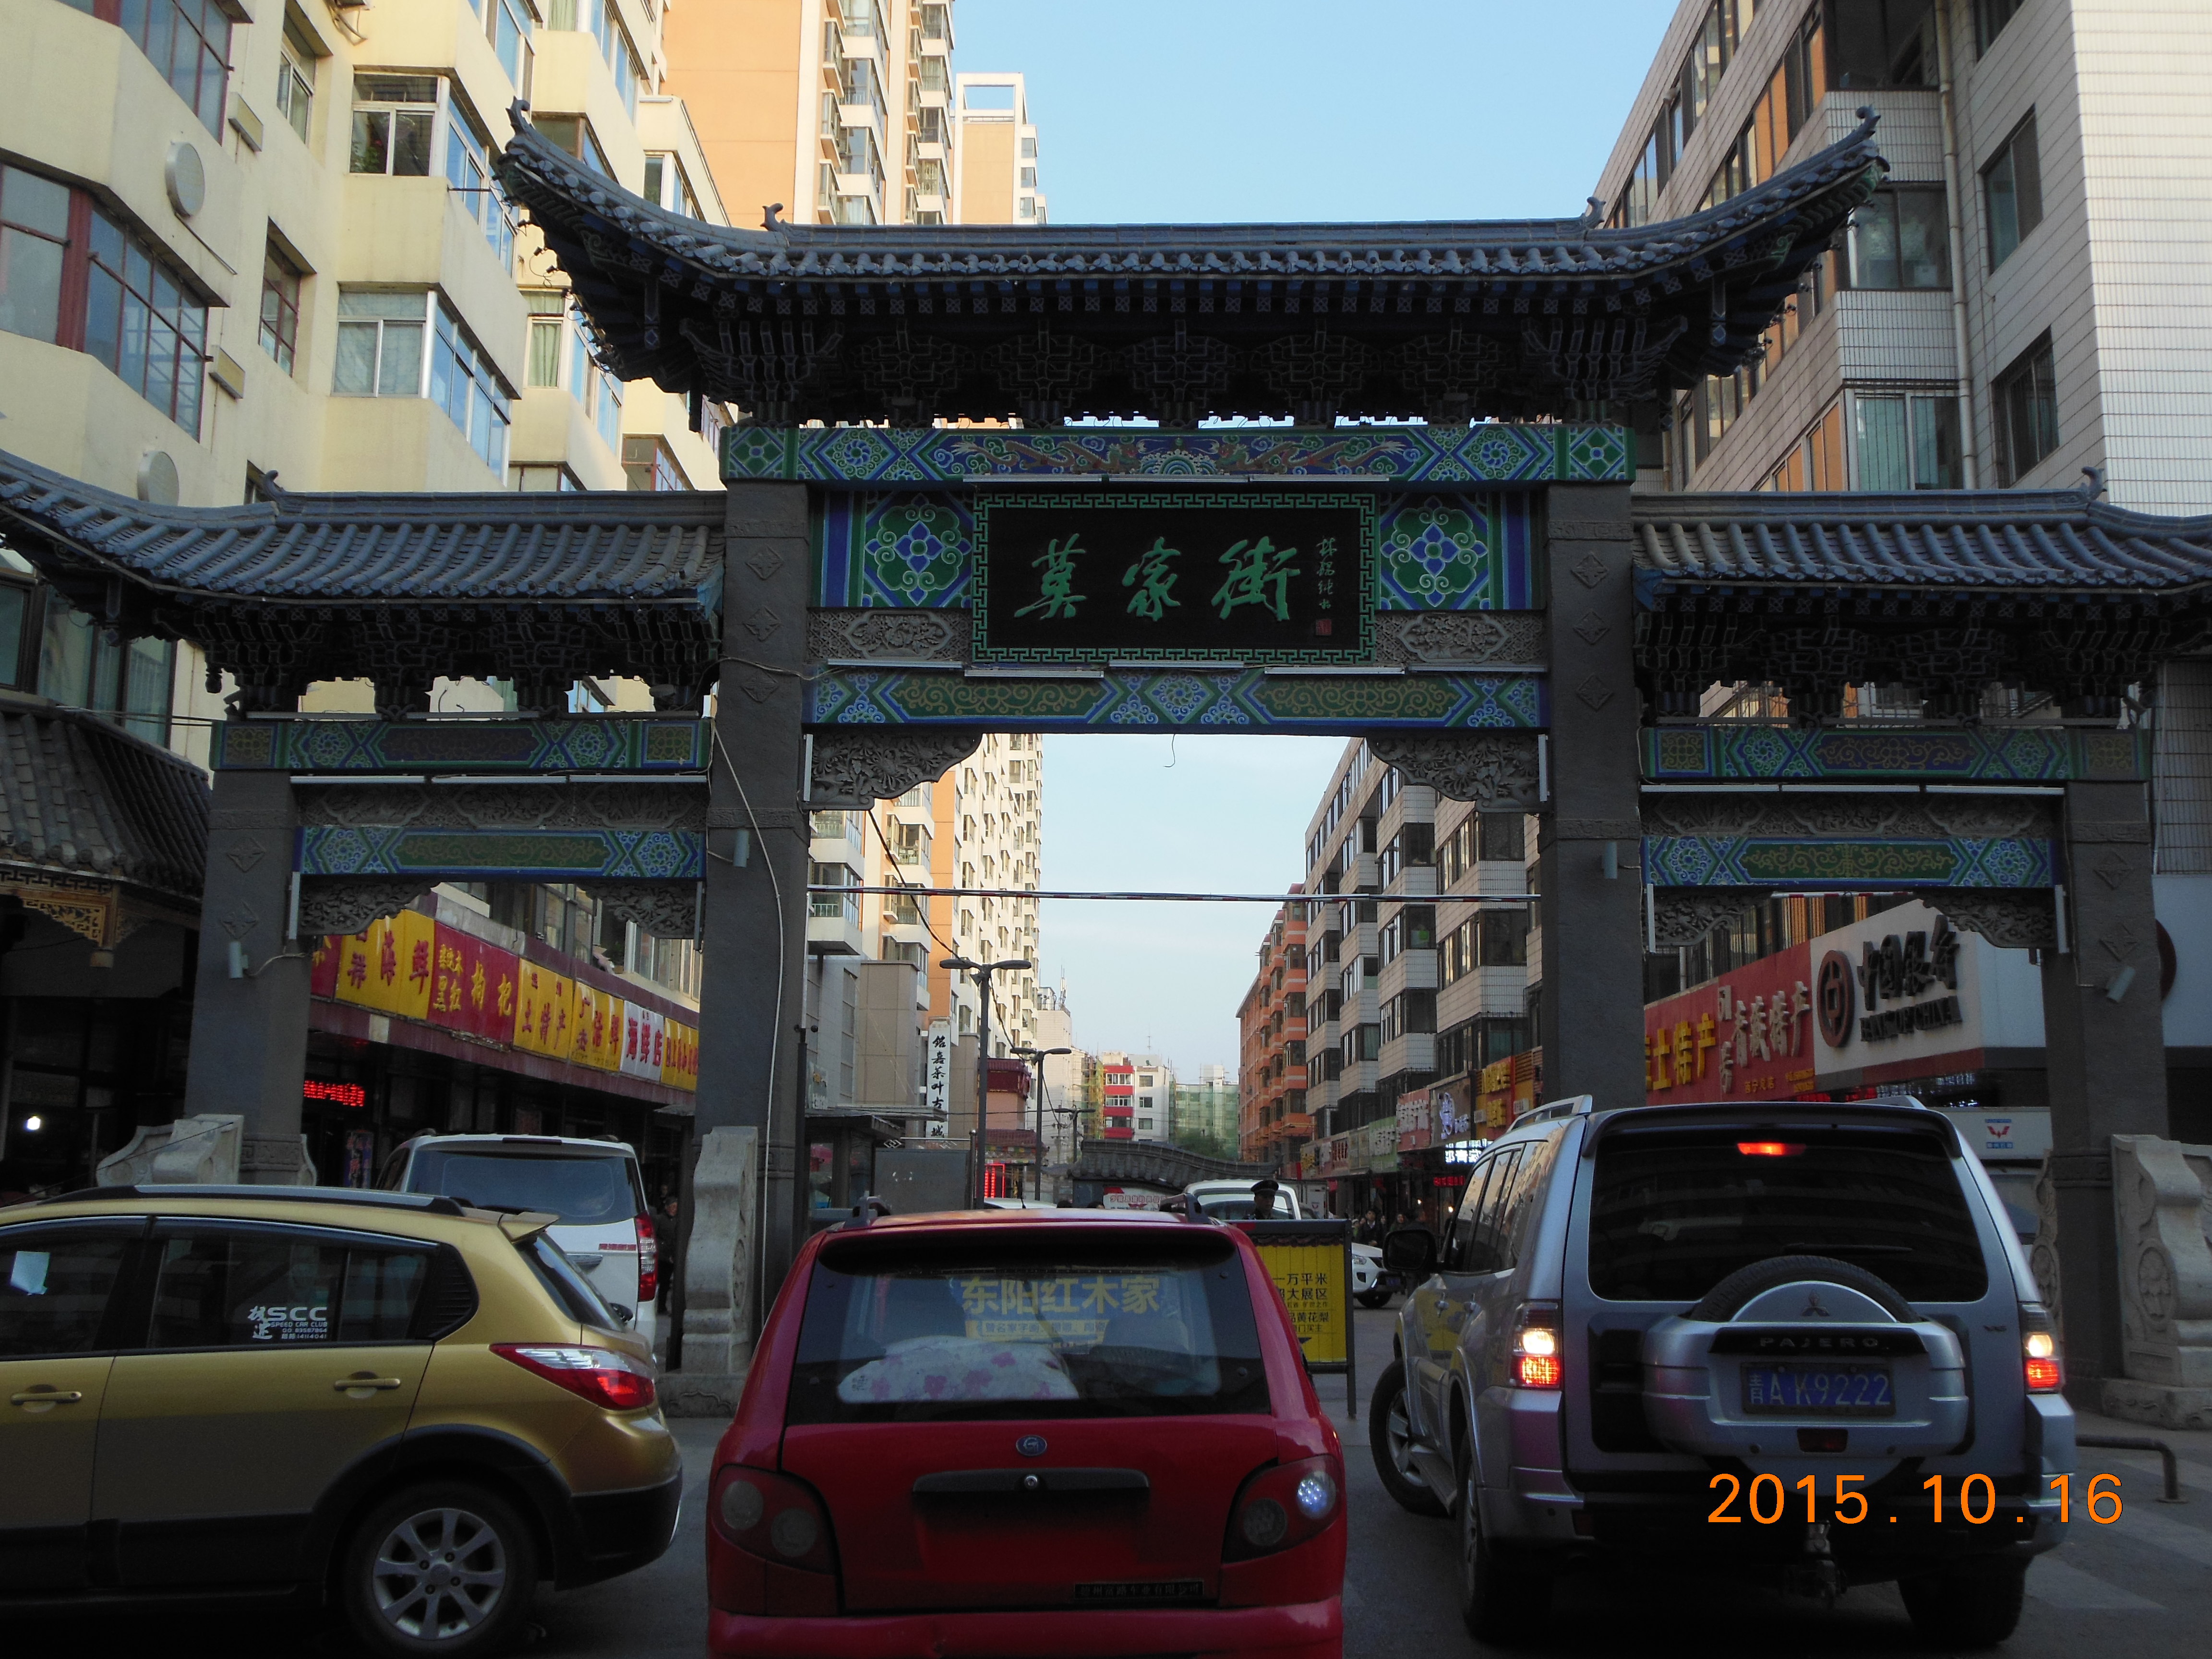 【携程攻略】西宁莫家街景点,莫家街位于青海省西宁市